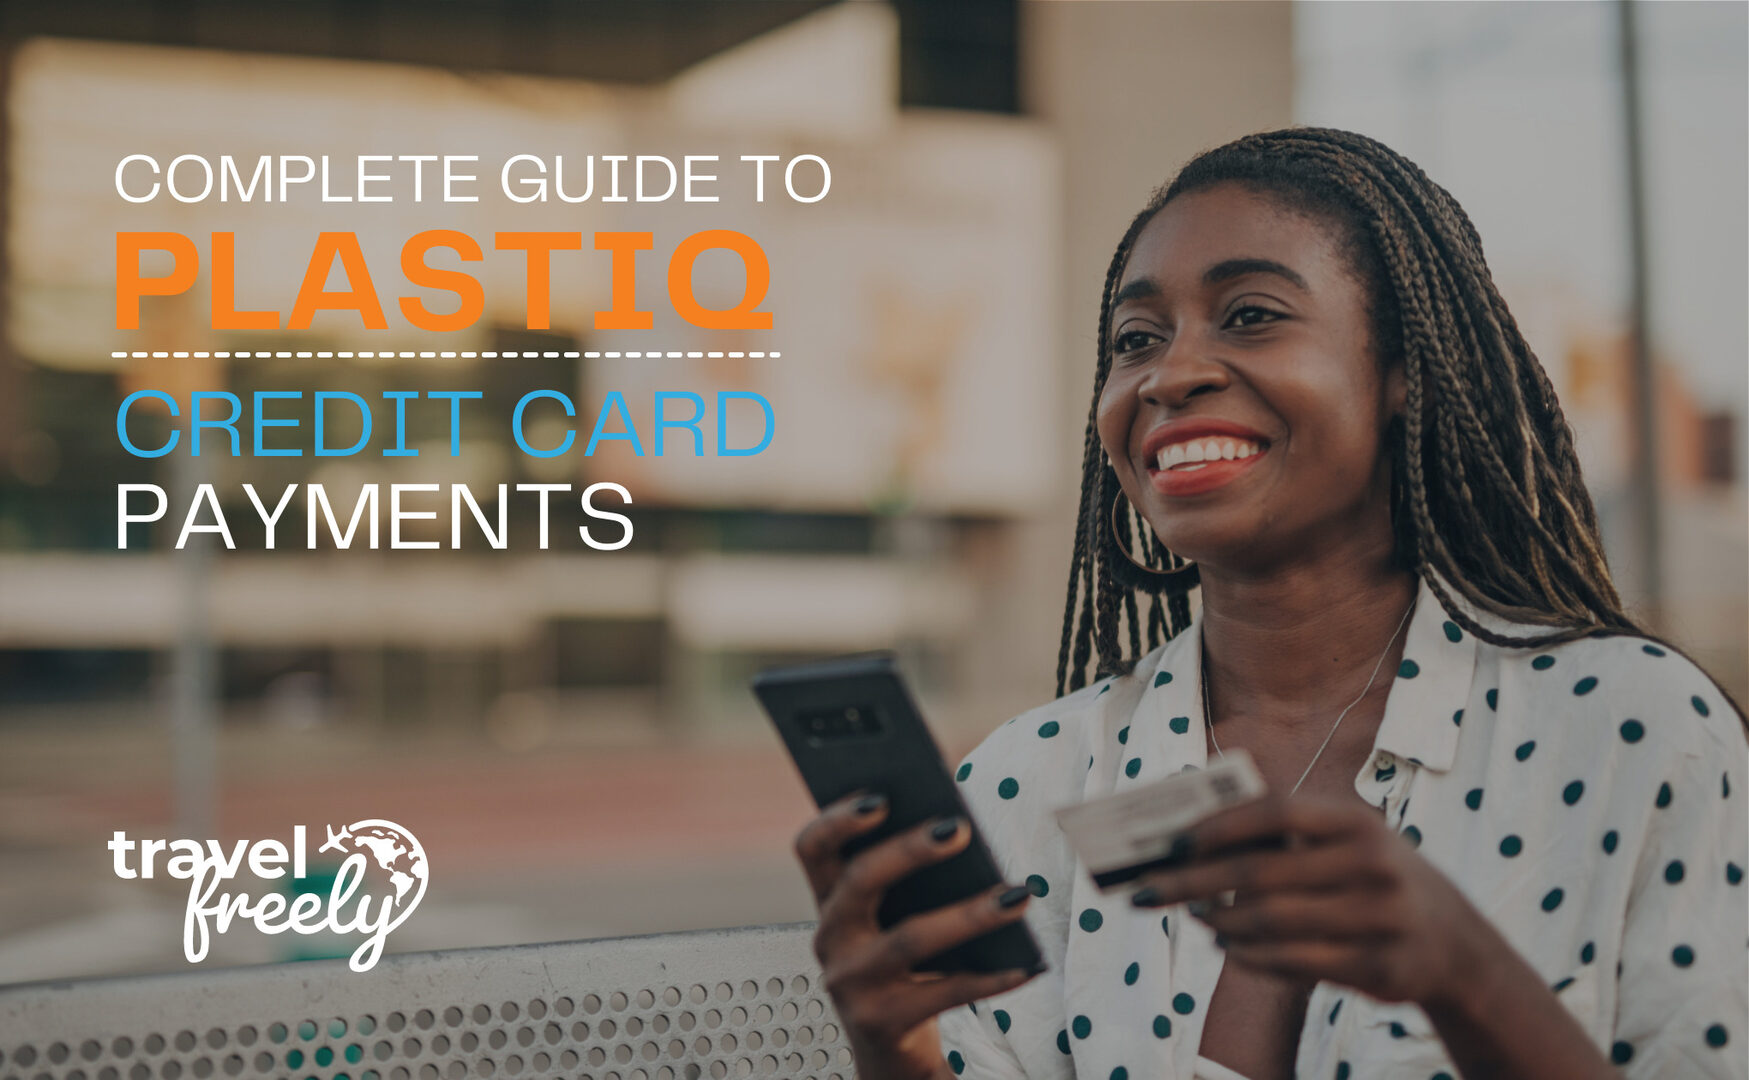 Complete guide to Plastiq credit card